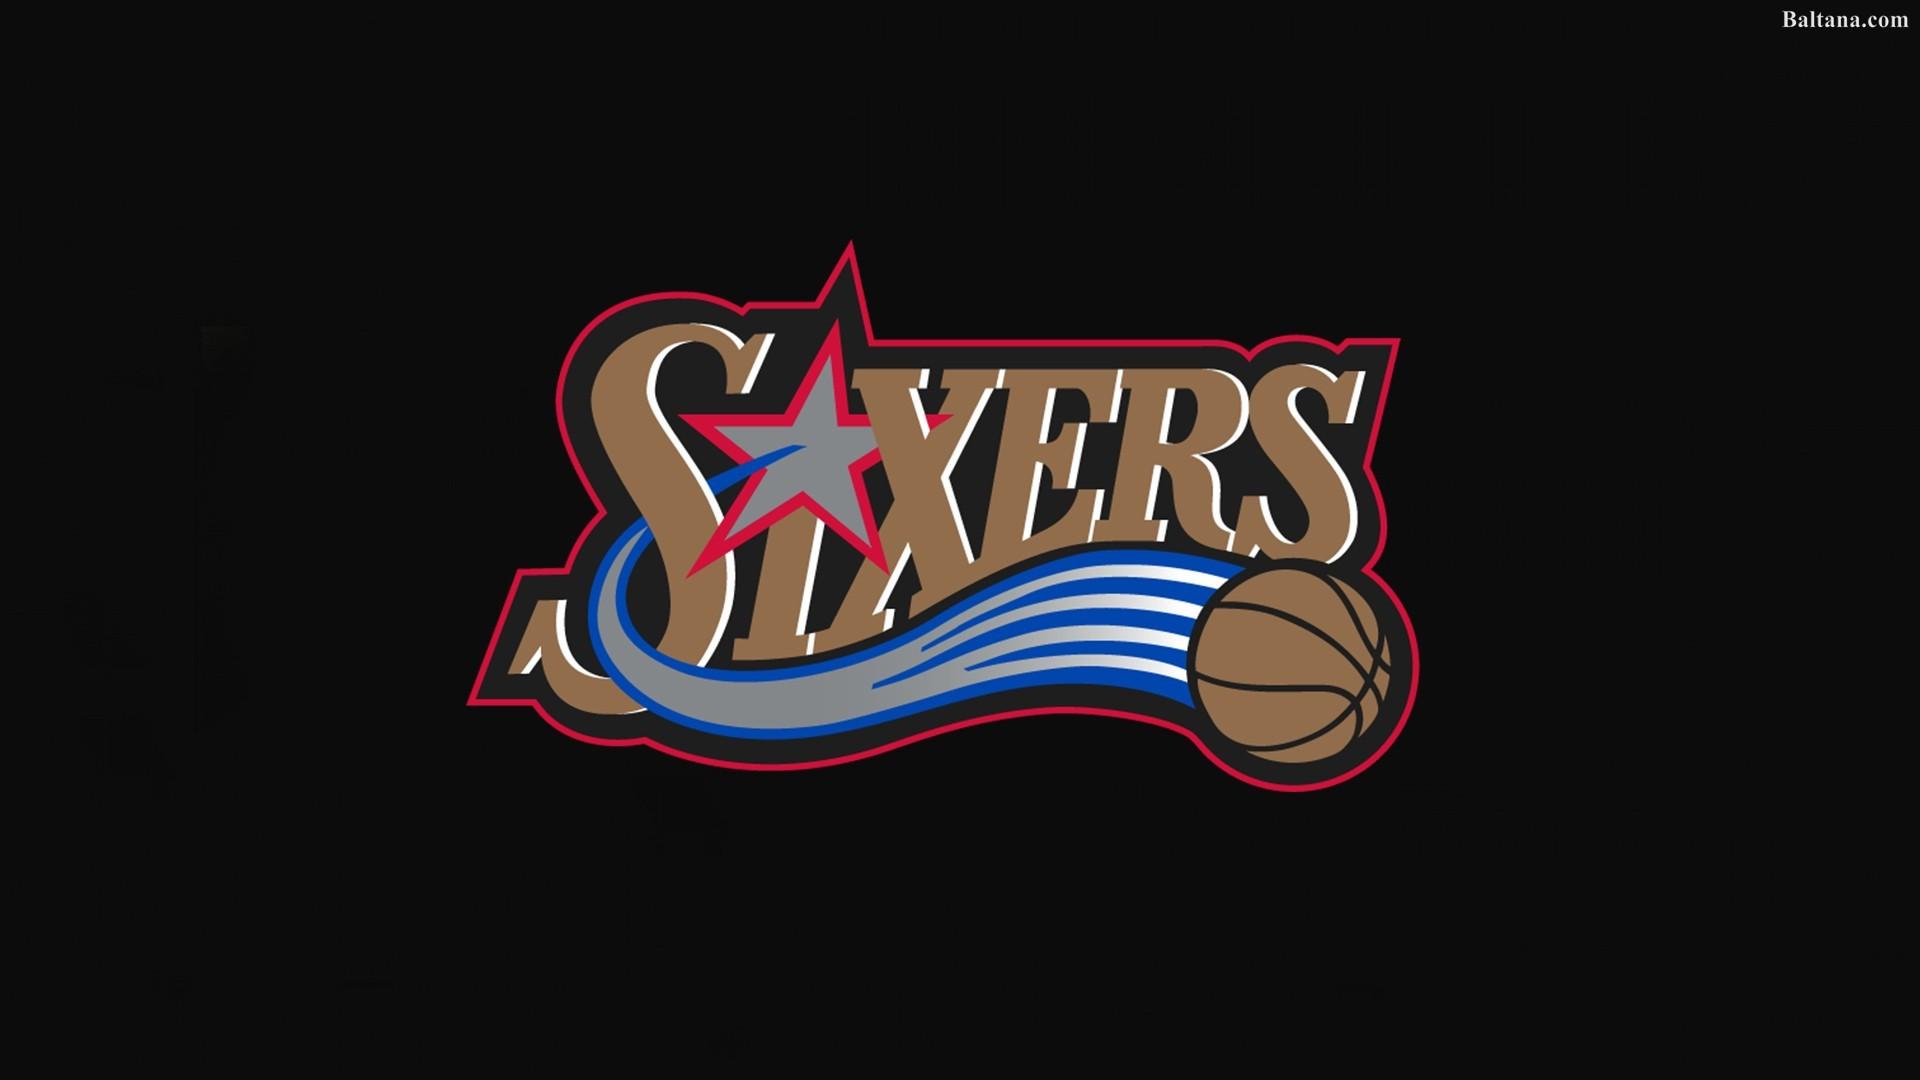 Hình nền Logo bóng rổ 76ers: Hình nền logo bóng rổ 76ers là một thiết kế đẹp mắt và rất sáng tạo. Đó là nơi để bạn có thể thấy được niềm đam mê của đội bóng và sự tận tâm trong môn thể thao bóng rổ.